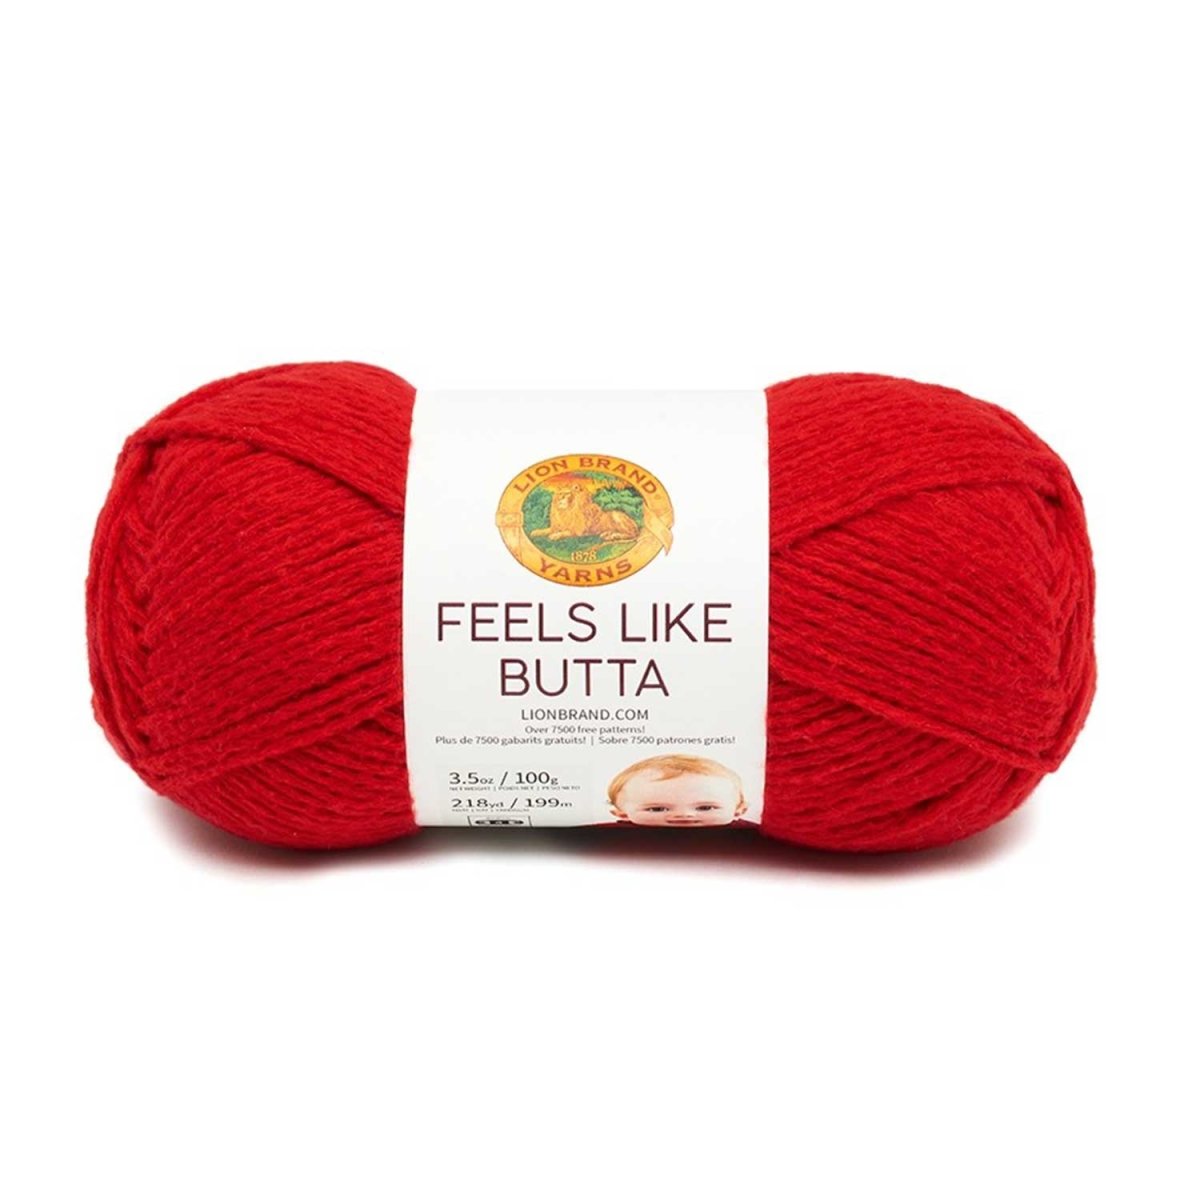 FEELS LIKE BUTTA - Crochetstores215-113